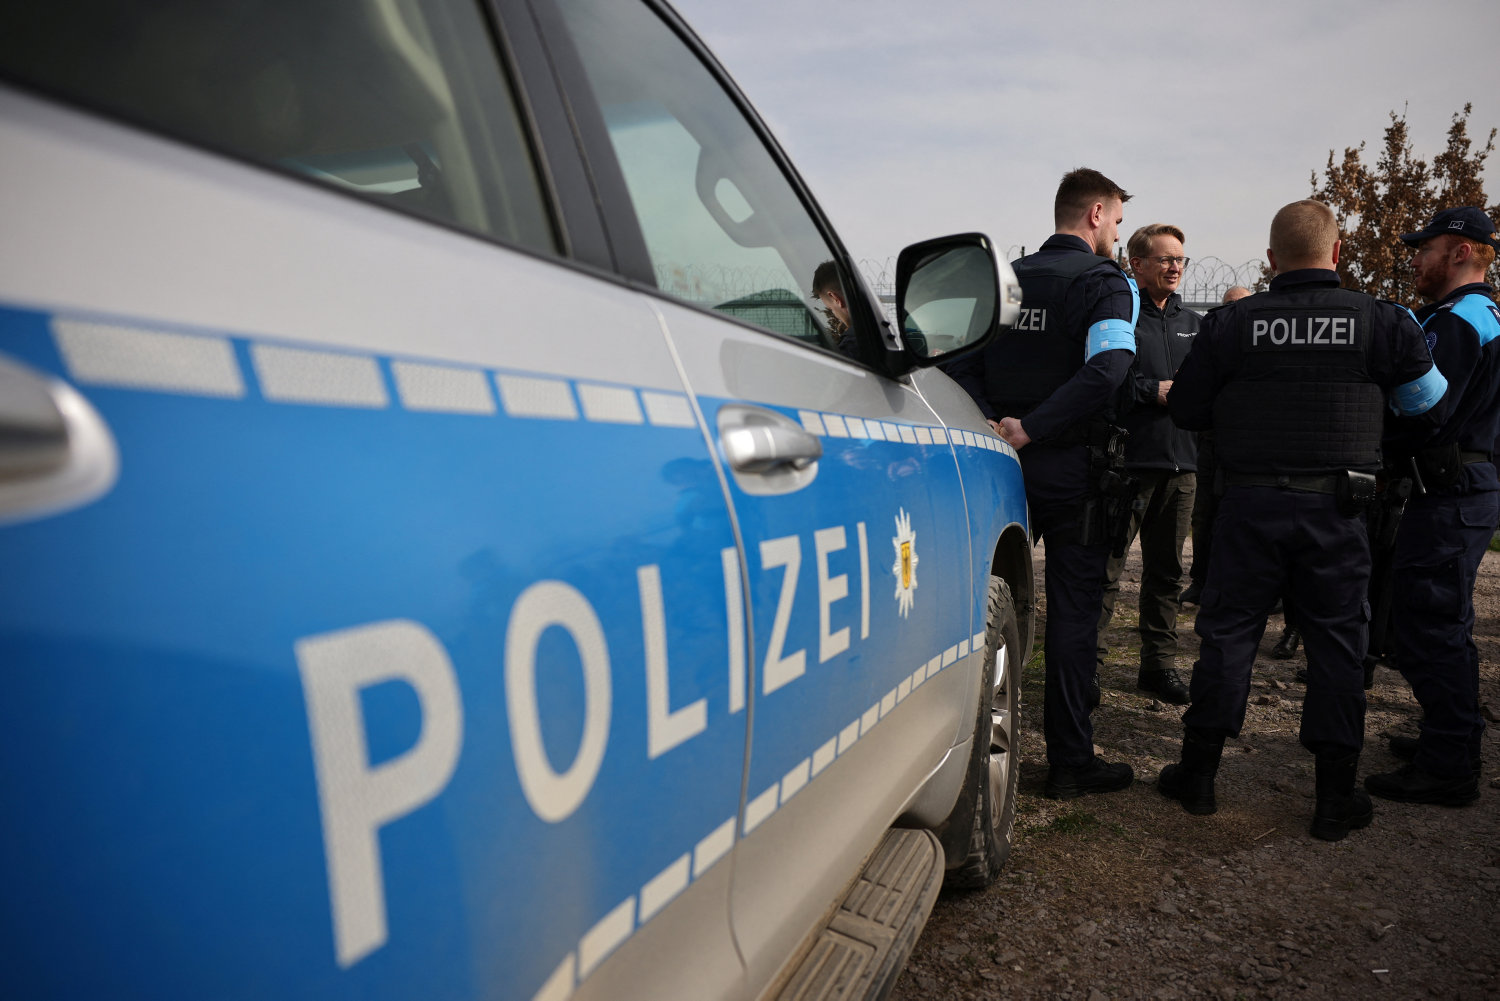 sag om bortførelse i gråsten er overgået til tysk politi